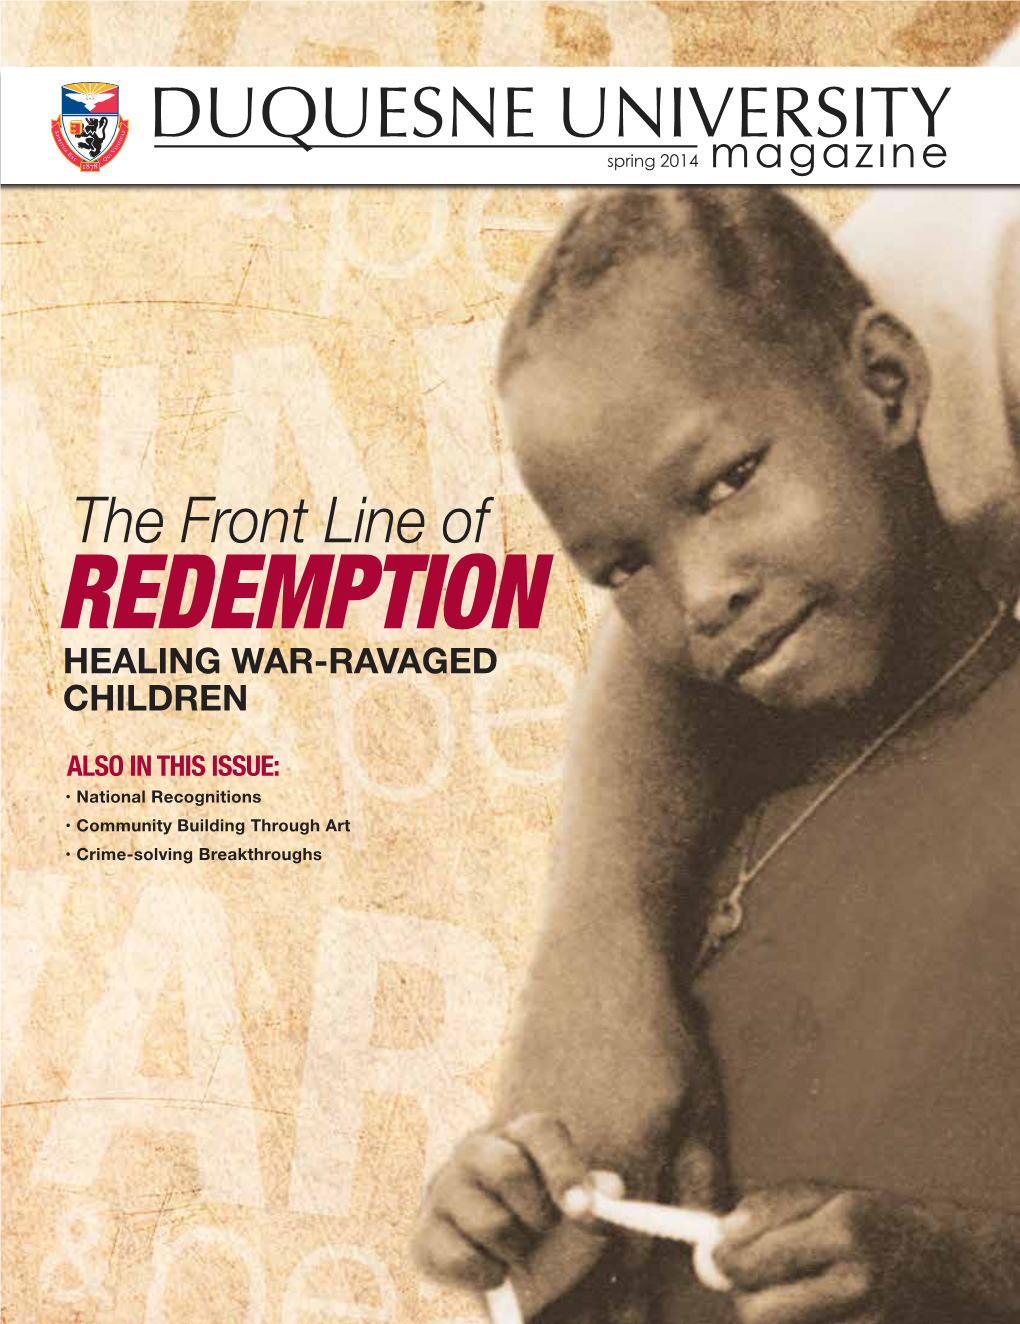 Redemption Healing War-Ravaged Children